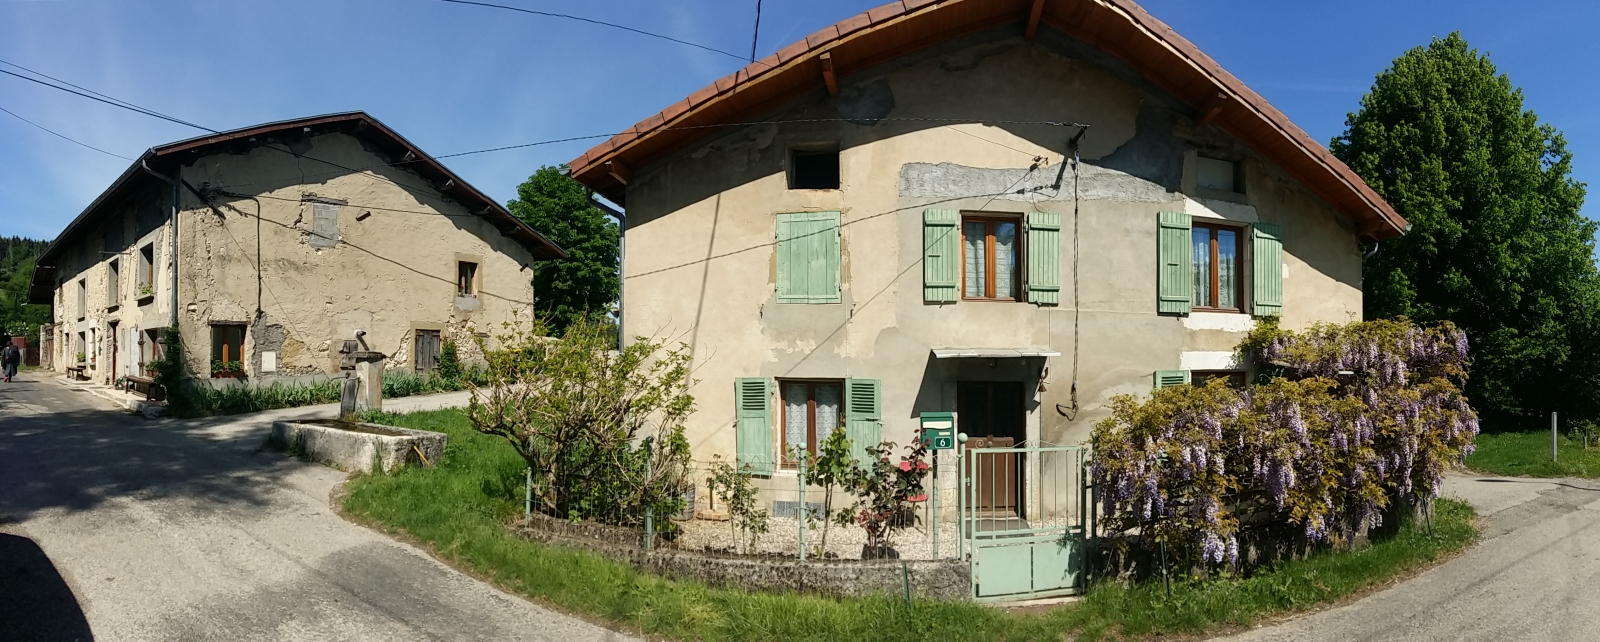 Village Grand Ratz 1600